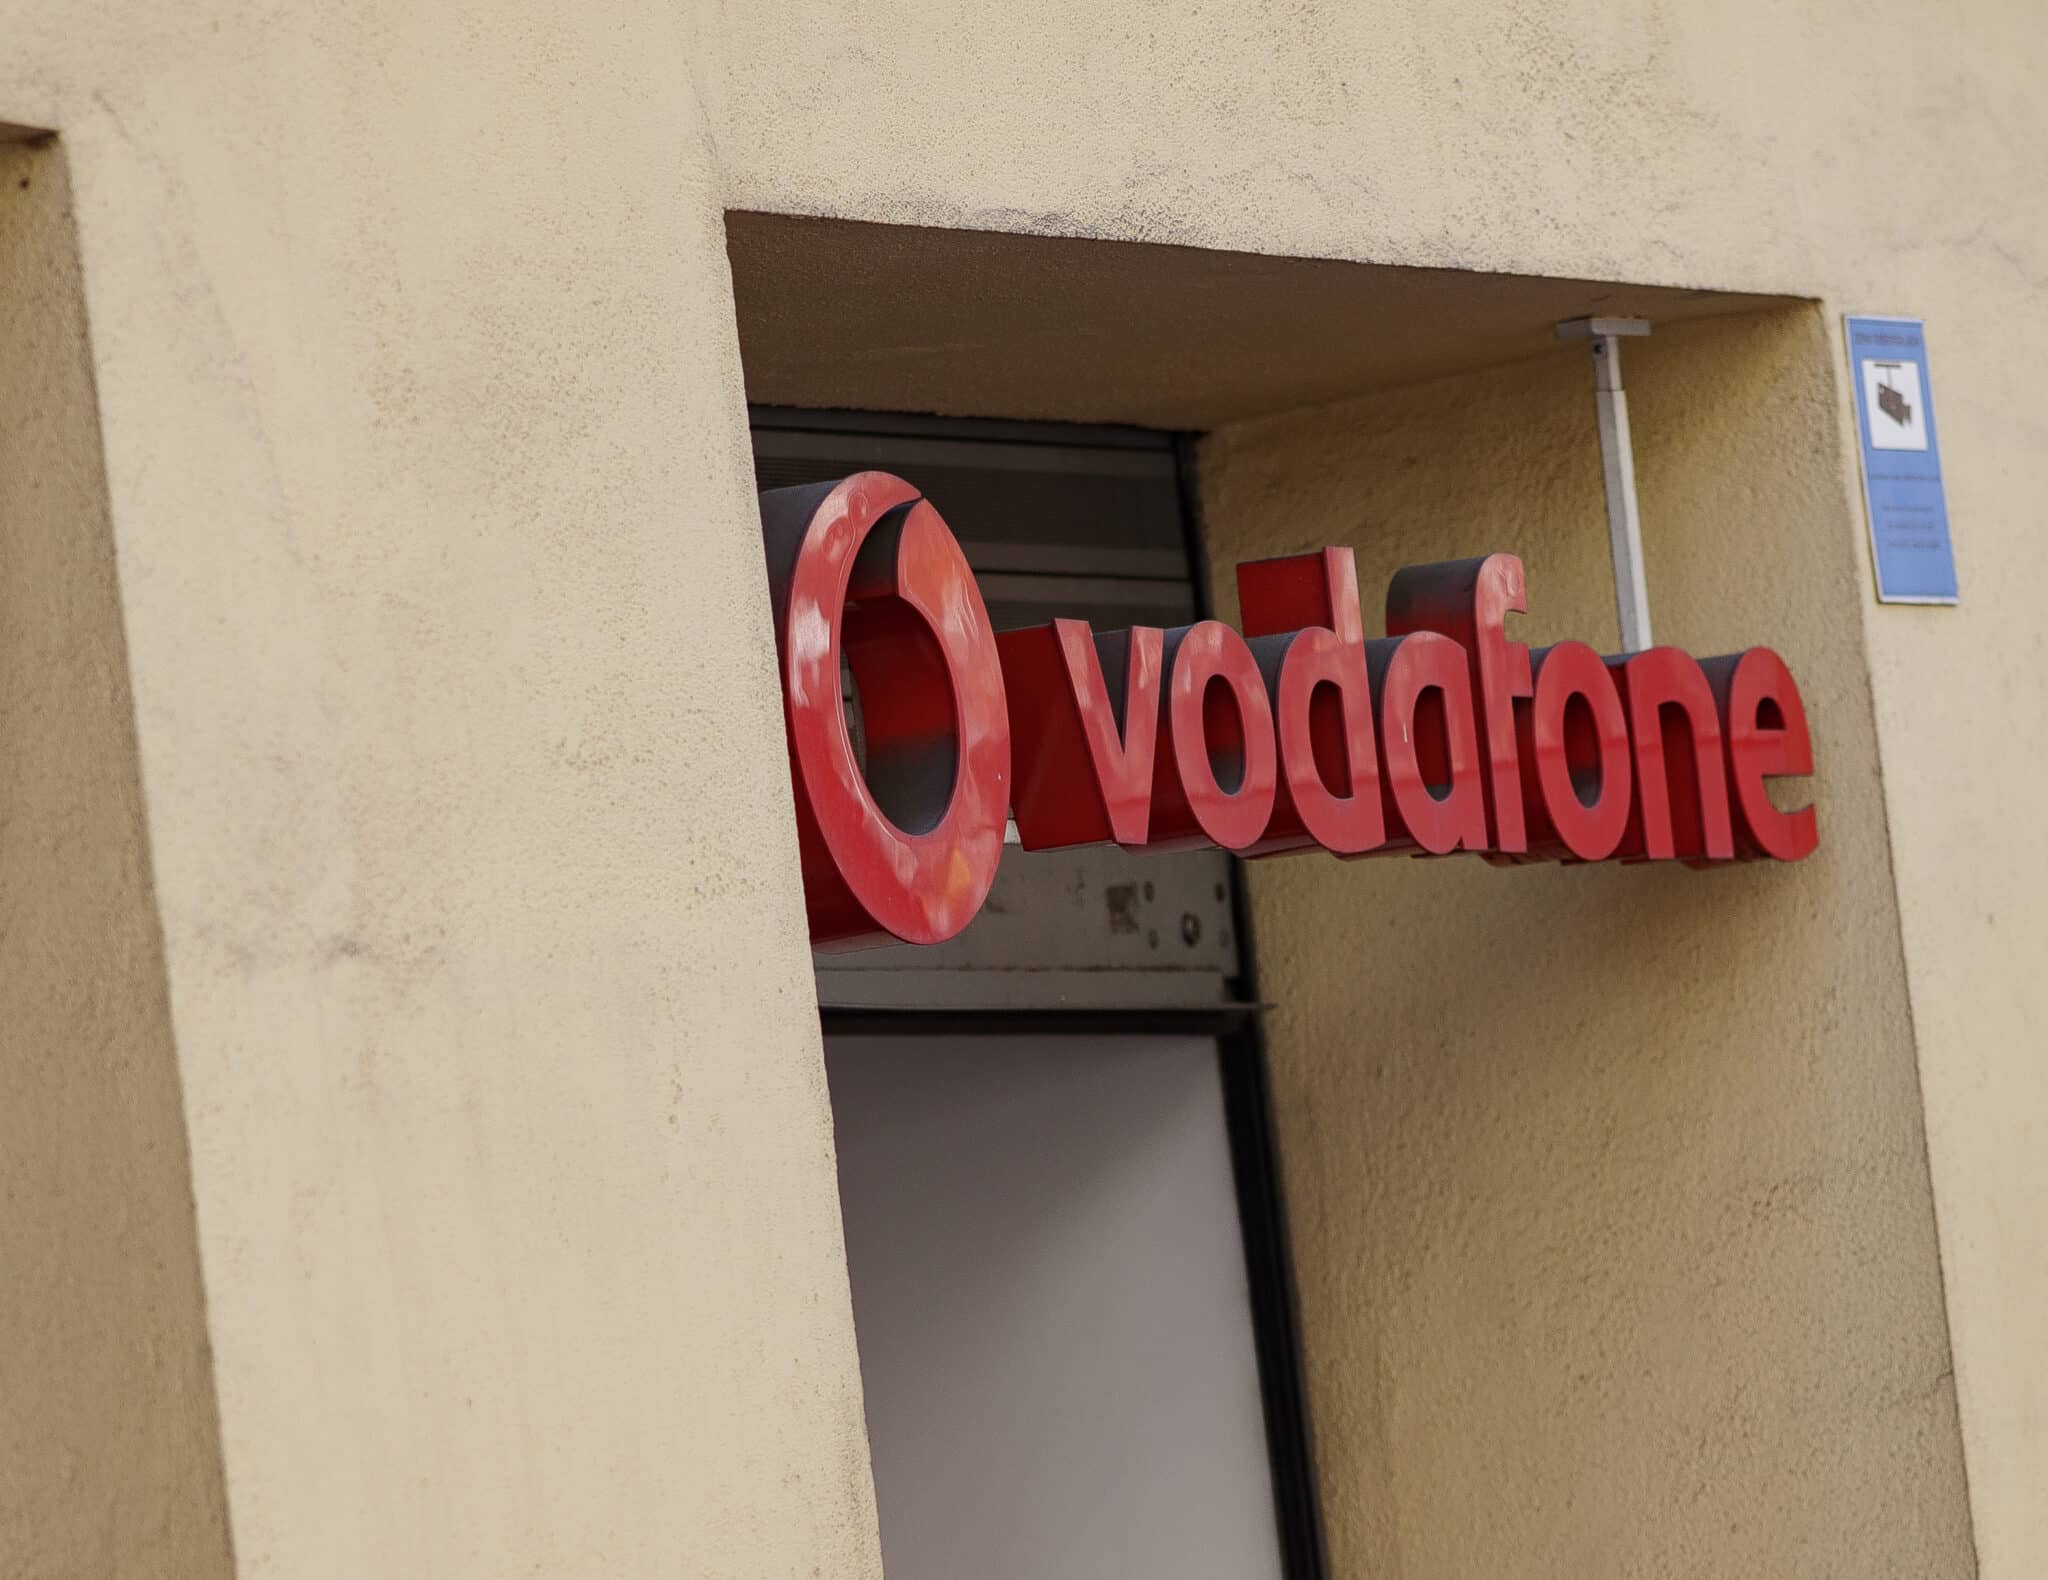 Tienda Vodafone en Madrid.